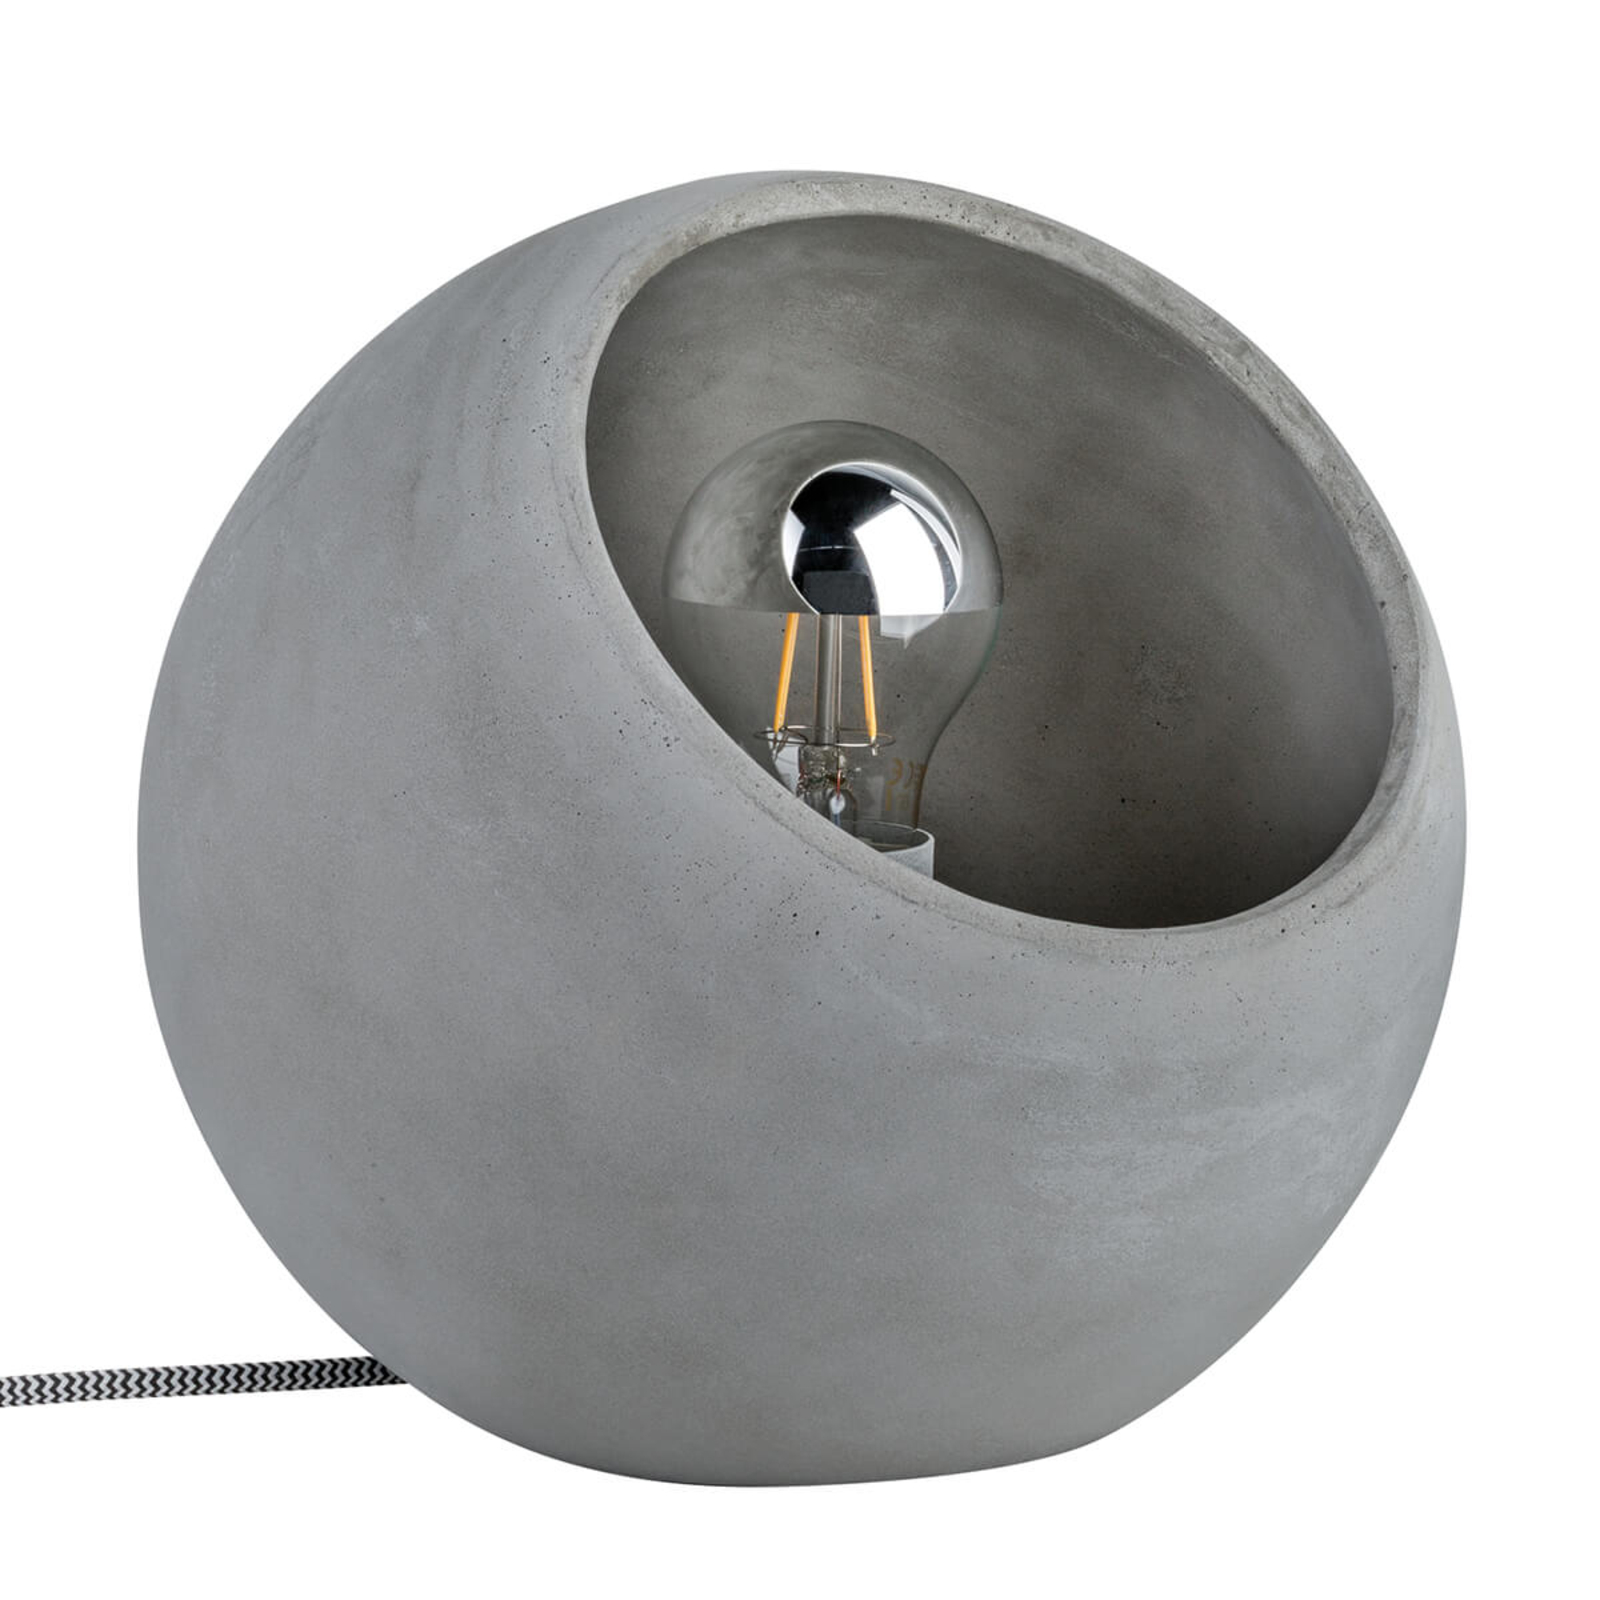 Topmoderne betonnen tafellamp Ingram